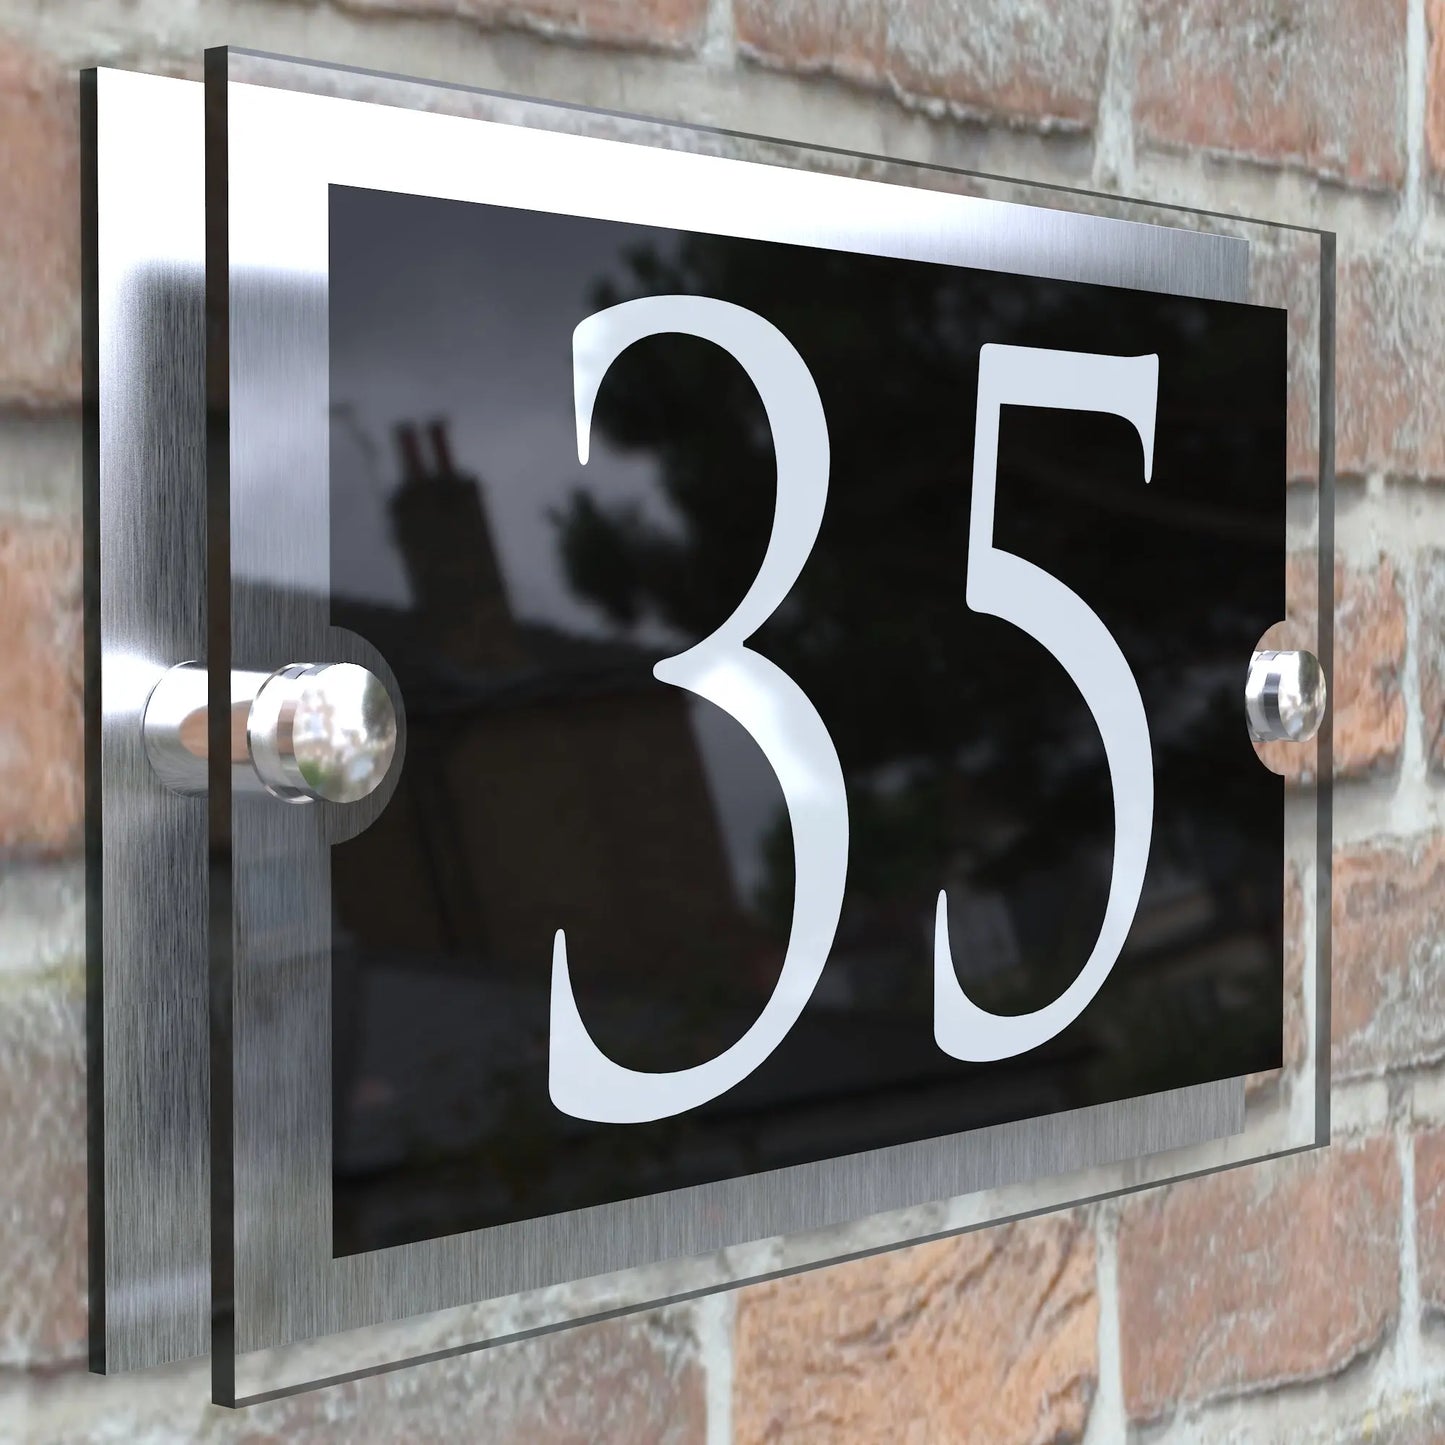 مادة رقم المنزل من سبائك الأكريليك والألومنيوم، علامة اسم الشارع، لوحة رقم المنزل، مادة خارجية، ديكور فني منزلي حديث